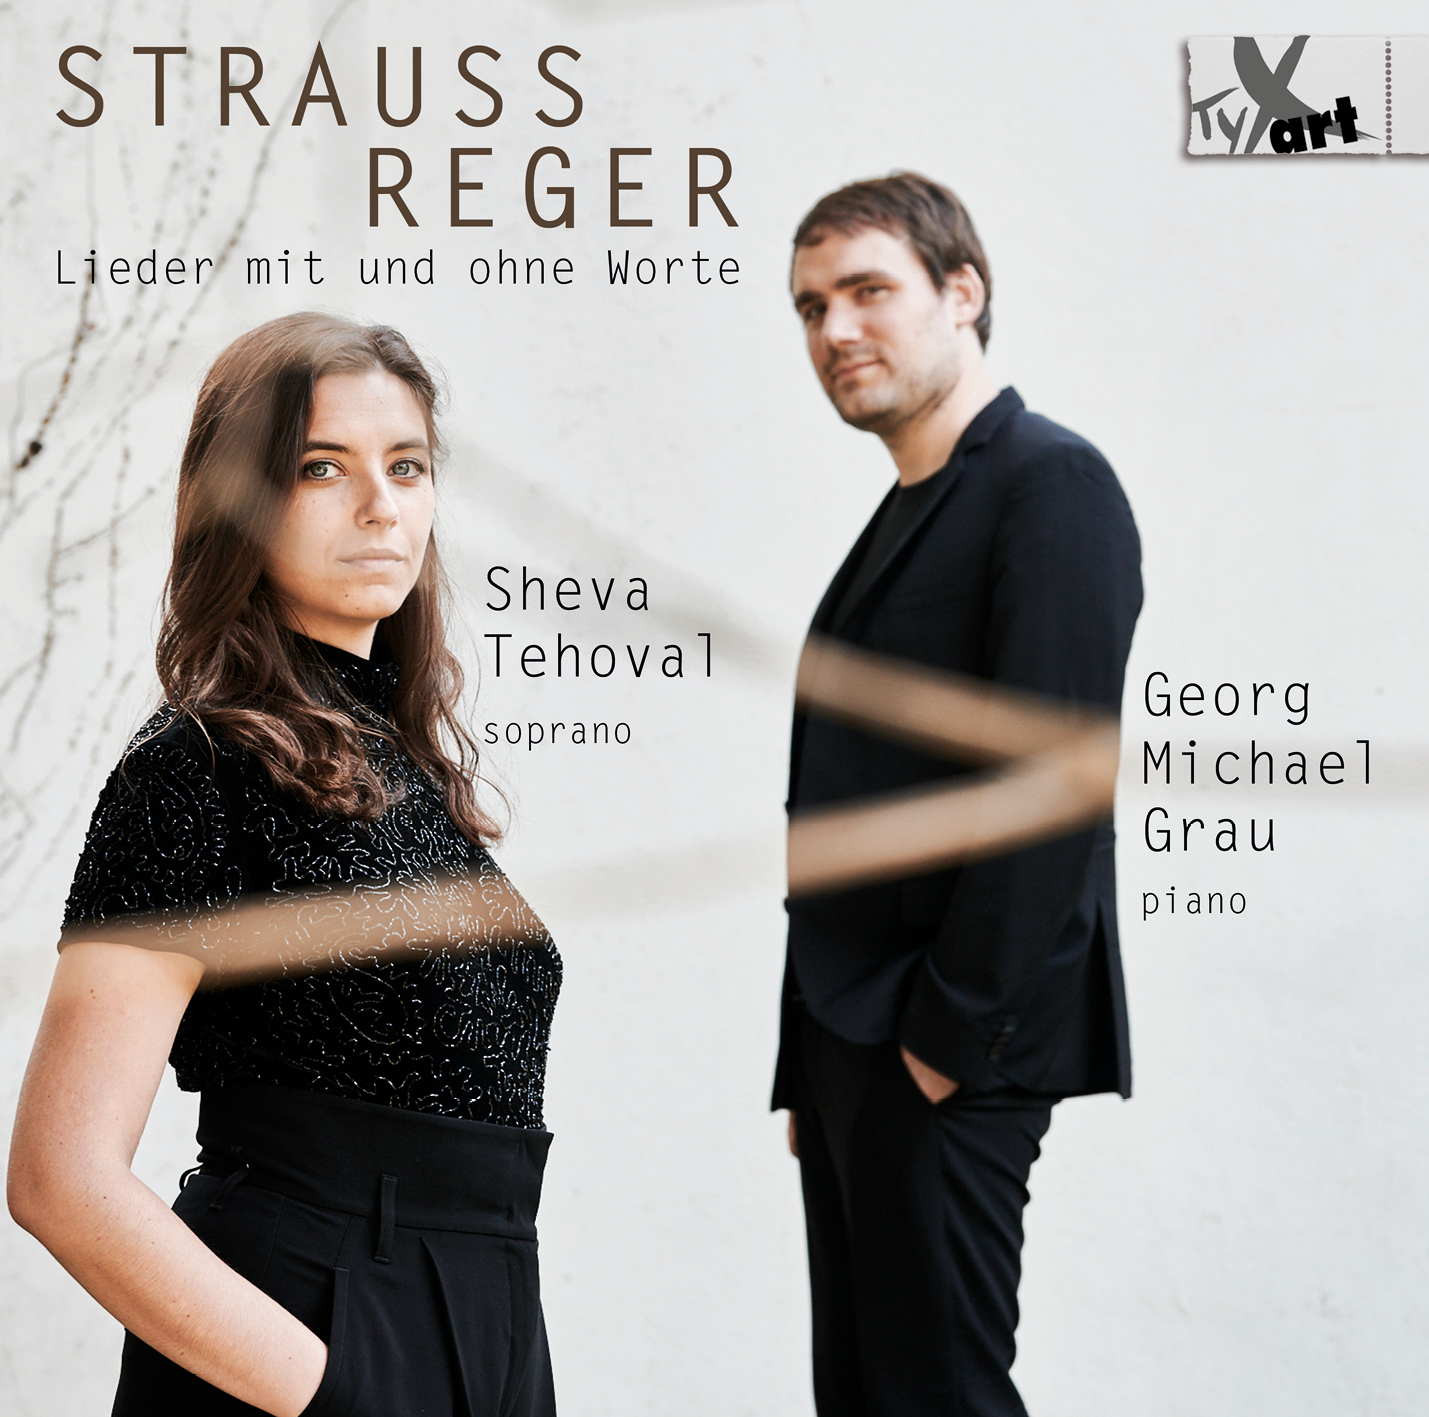 Strauss - Reger - Lieder mit und ohne Worte - Tehoval & Grau